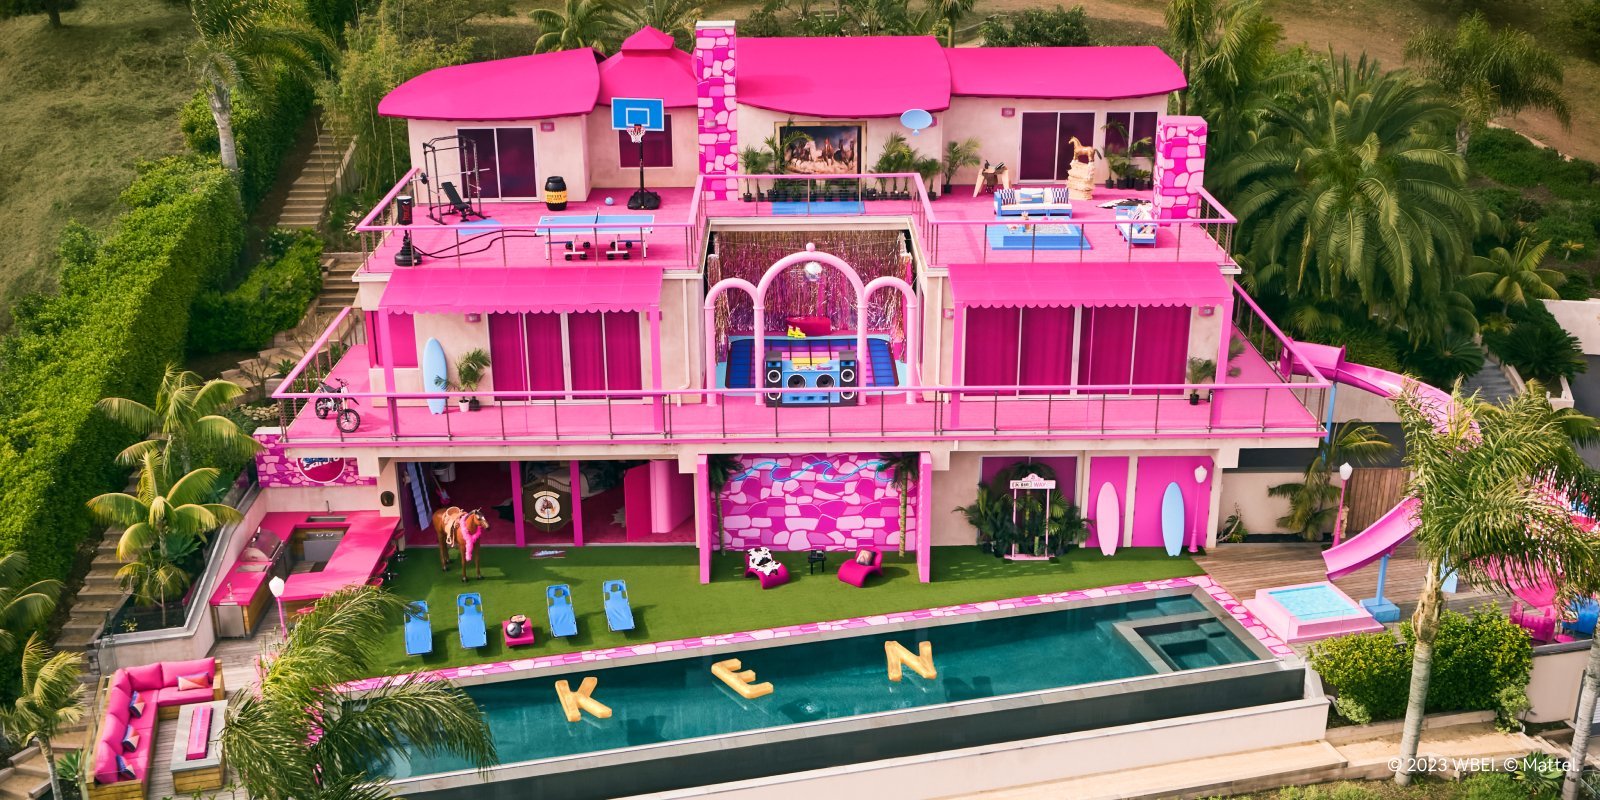 《芭比》粉色房子7月17日变成民宿 粉丝绘制《奥本海默》跨界图-第0张